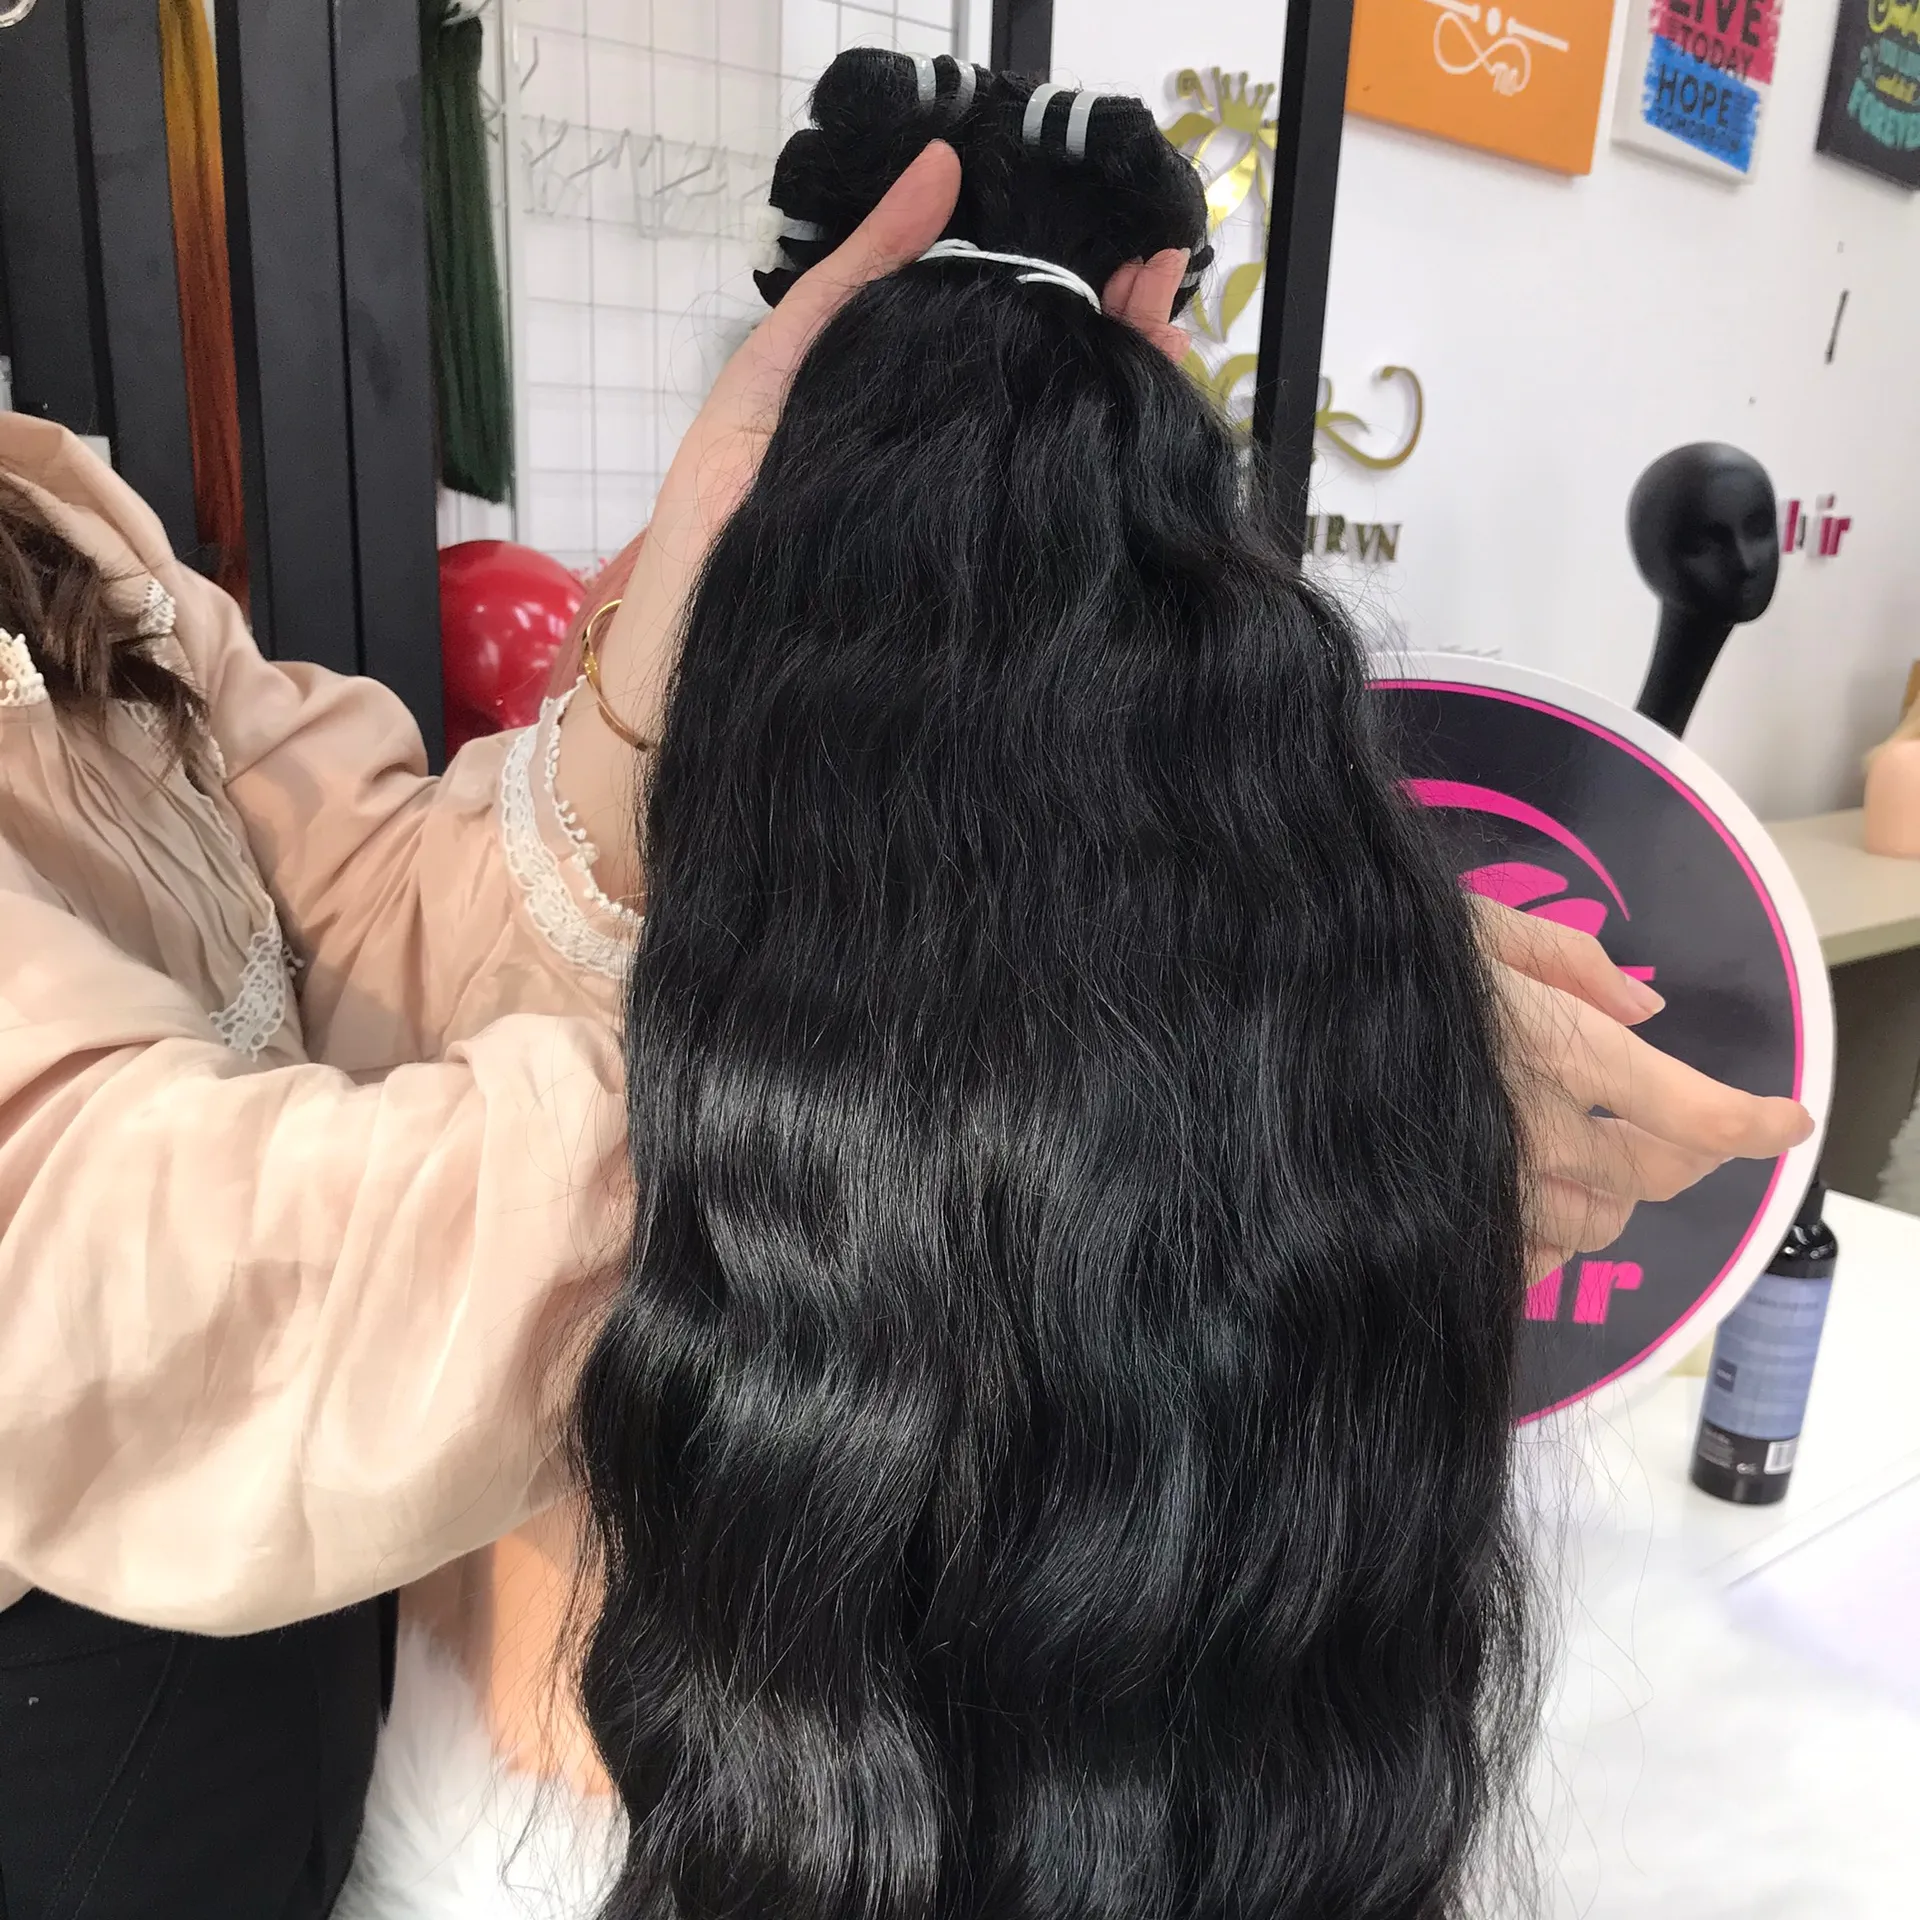 Cheveux vietnamiens bruts de meilleure qualité directement du temple vietnamien 100% texture et couleur naturelles ondulées brutes non transformées